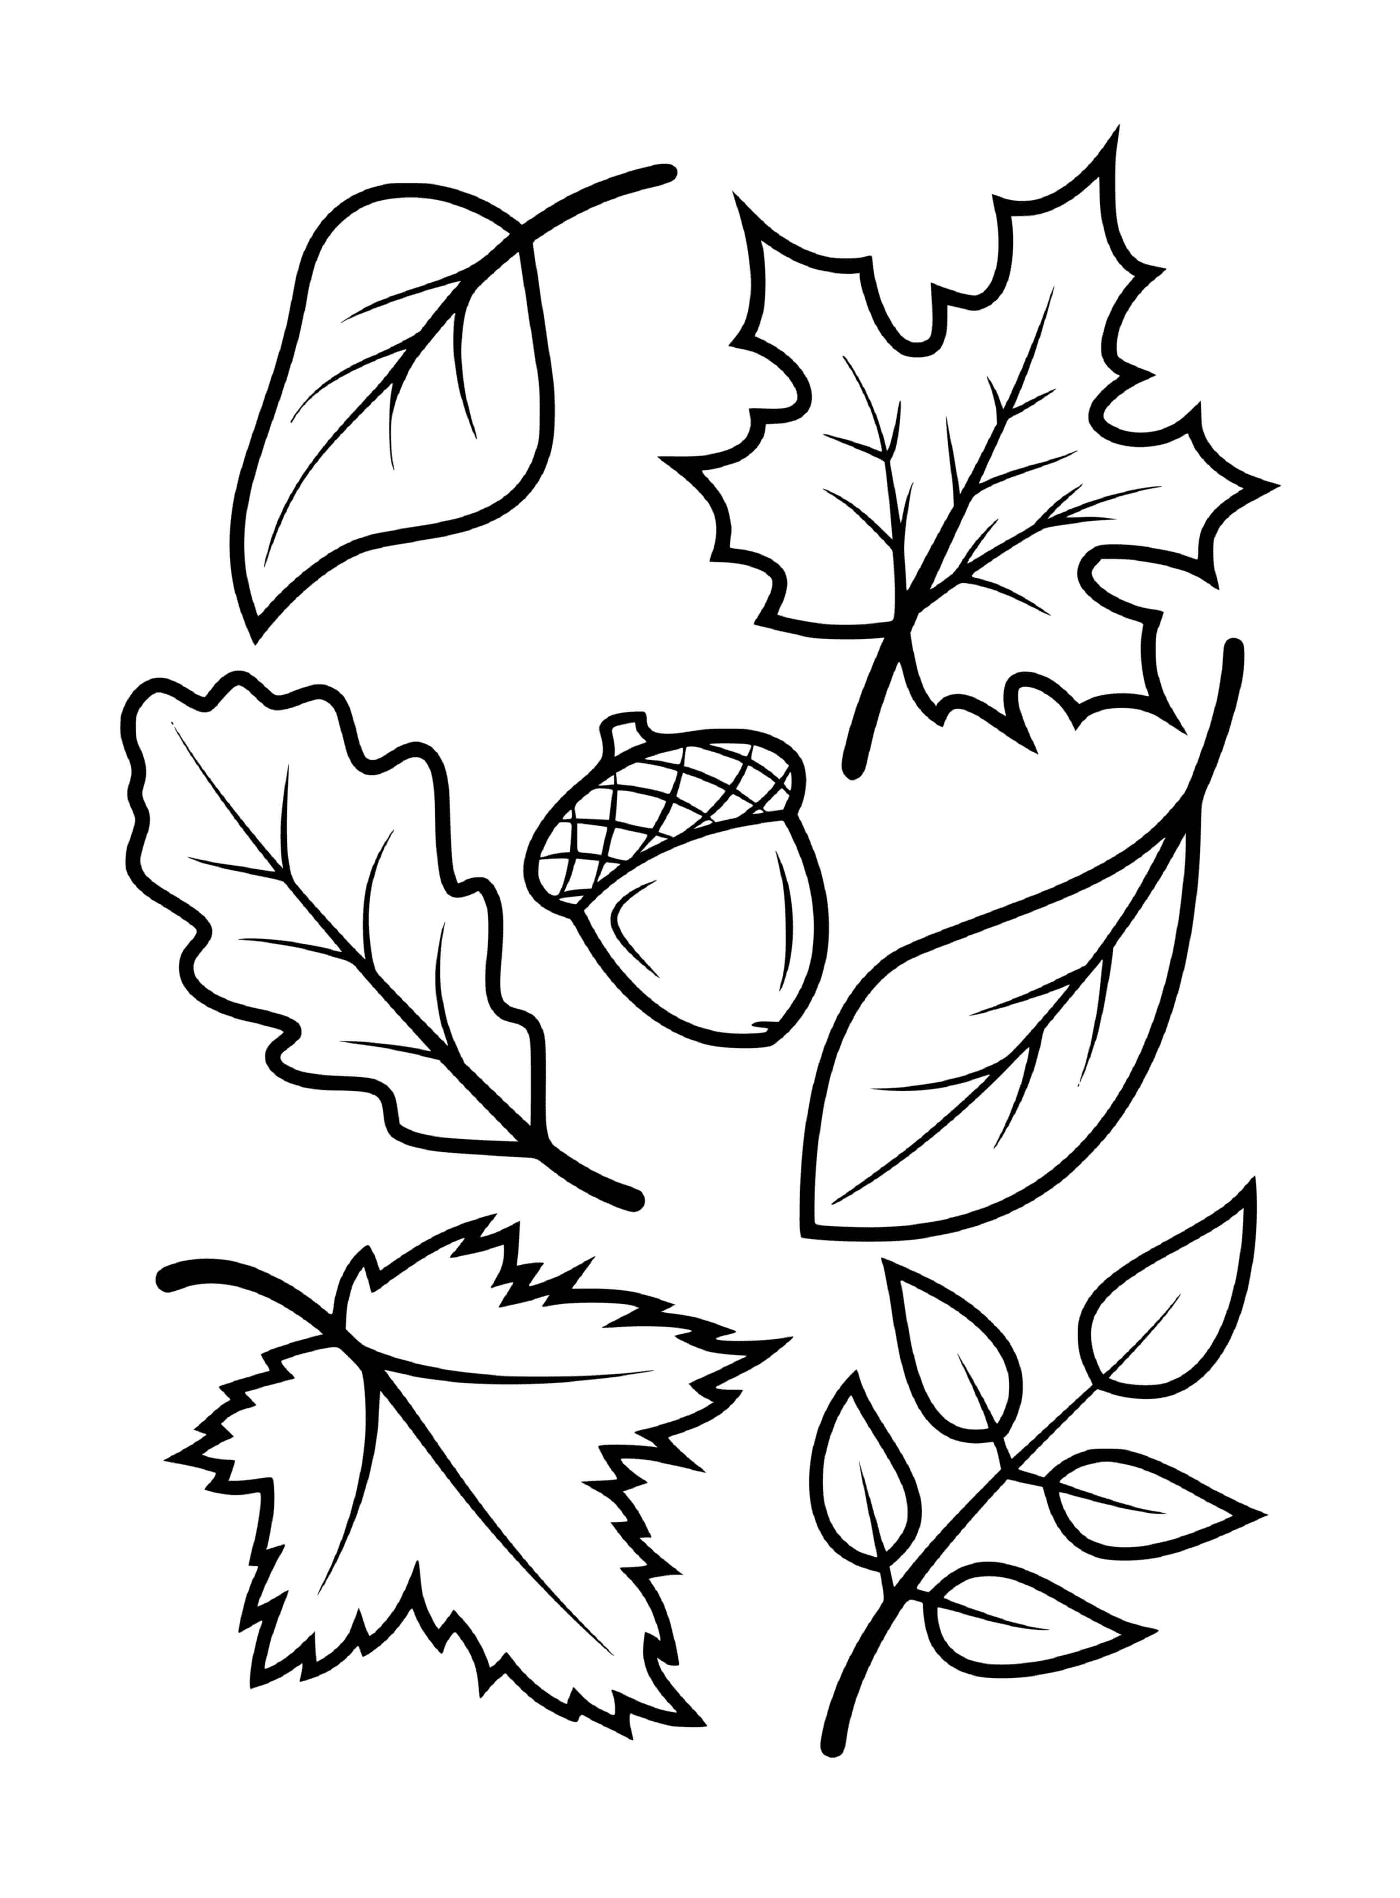  Hojas y bellotas de árboles de otoño (por ejemplo, arce, haya, roble) 